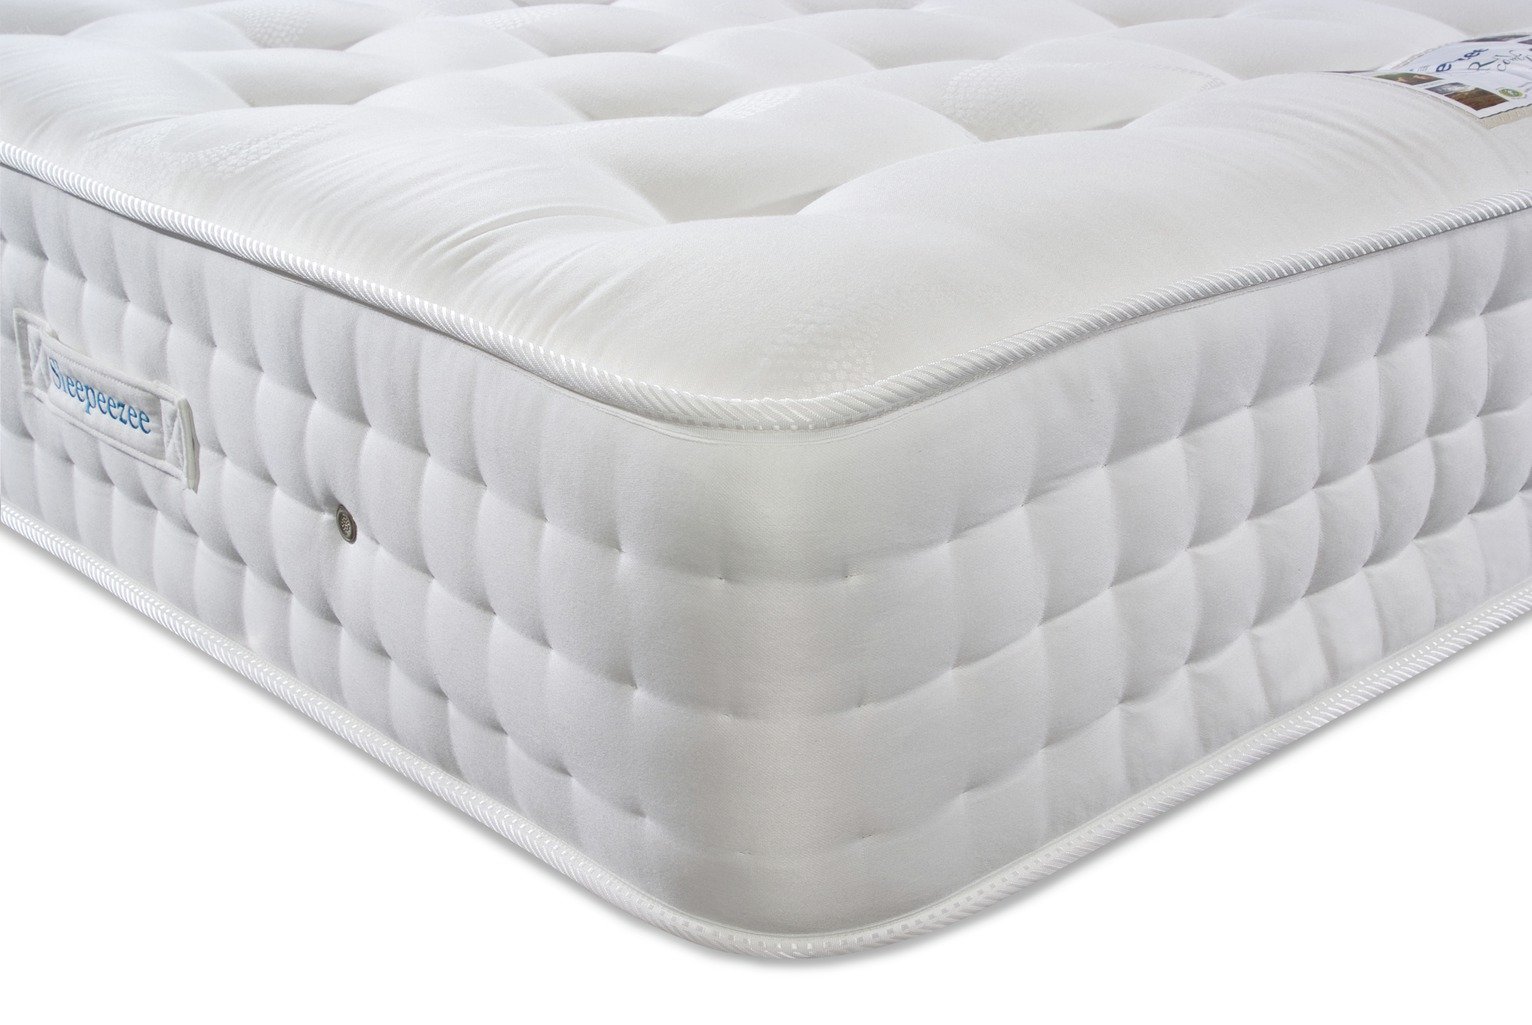 sleepeezee regency eminent mattress reviews